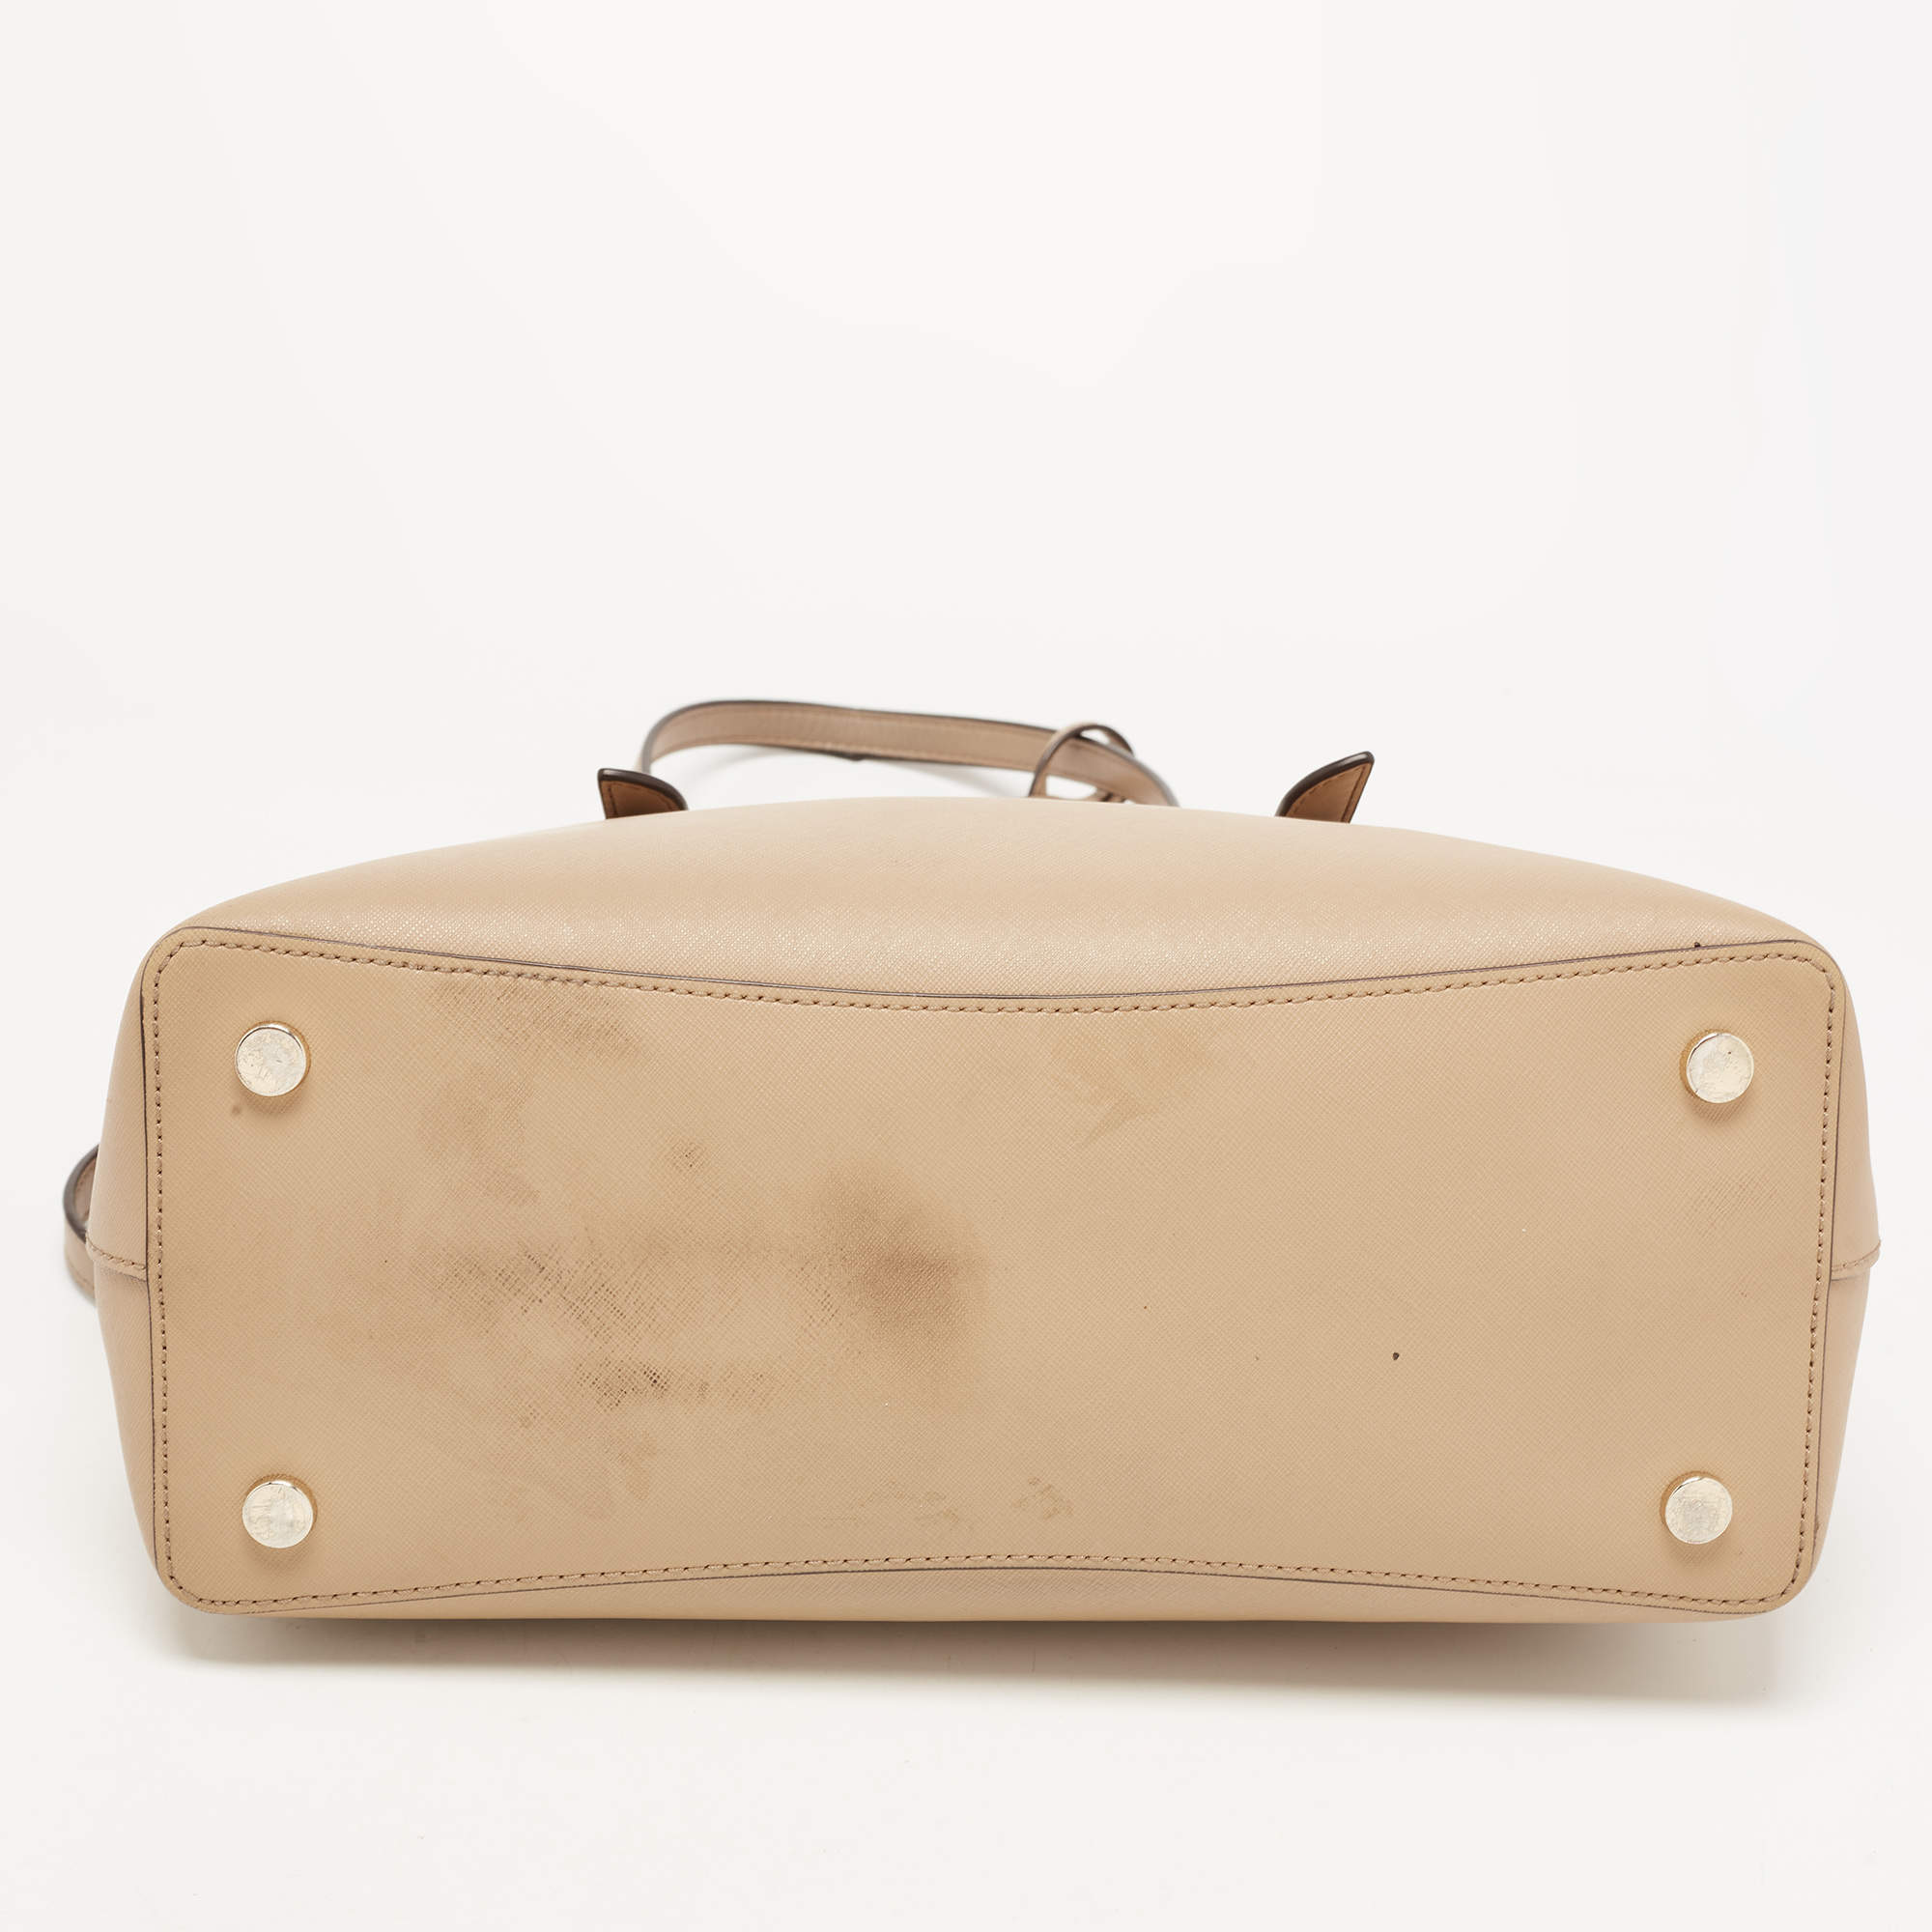 NWT Michael Kors Mel Saffiano Black Leather Large Tote Shoulder Bag Handbag